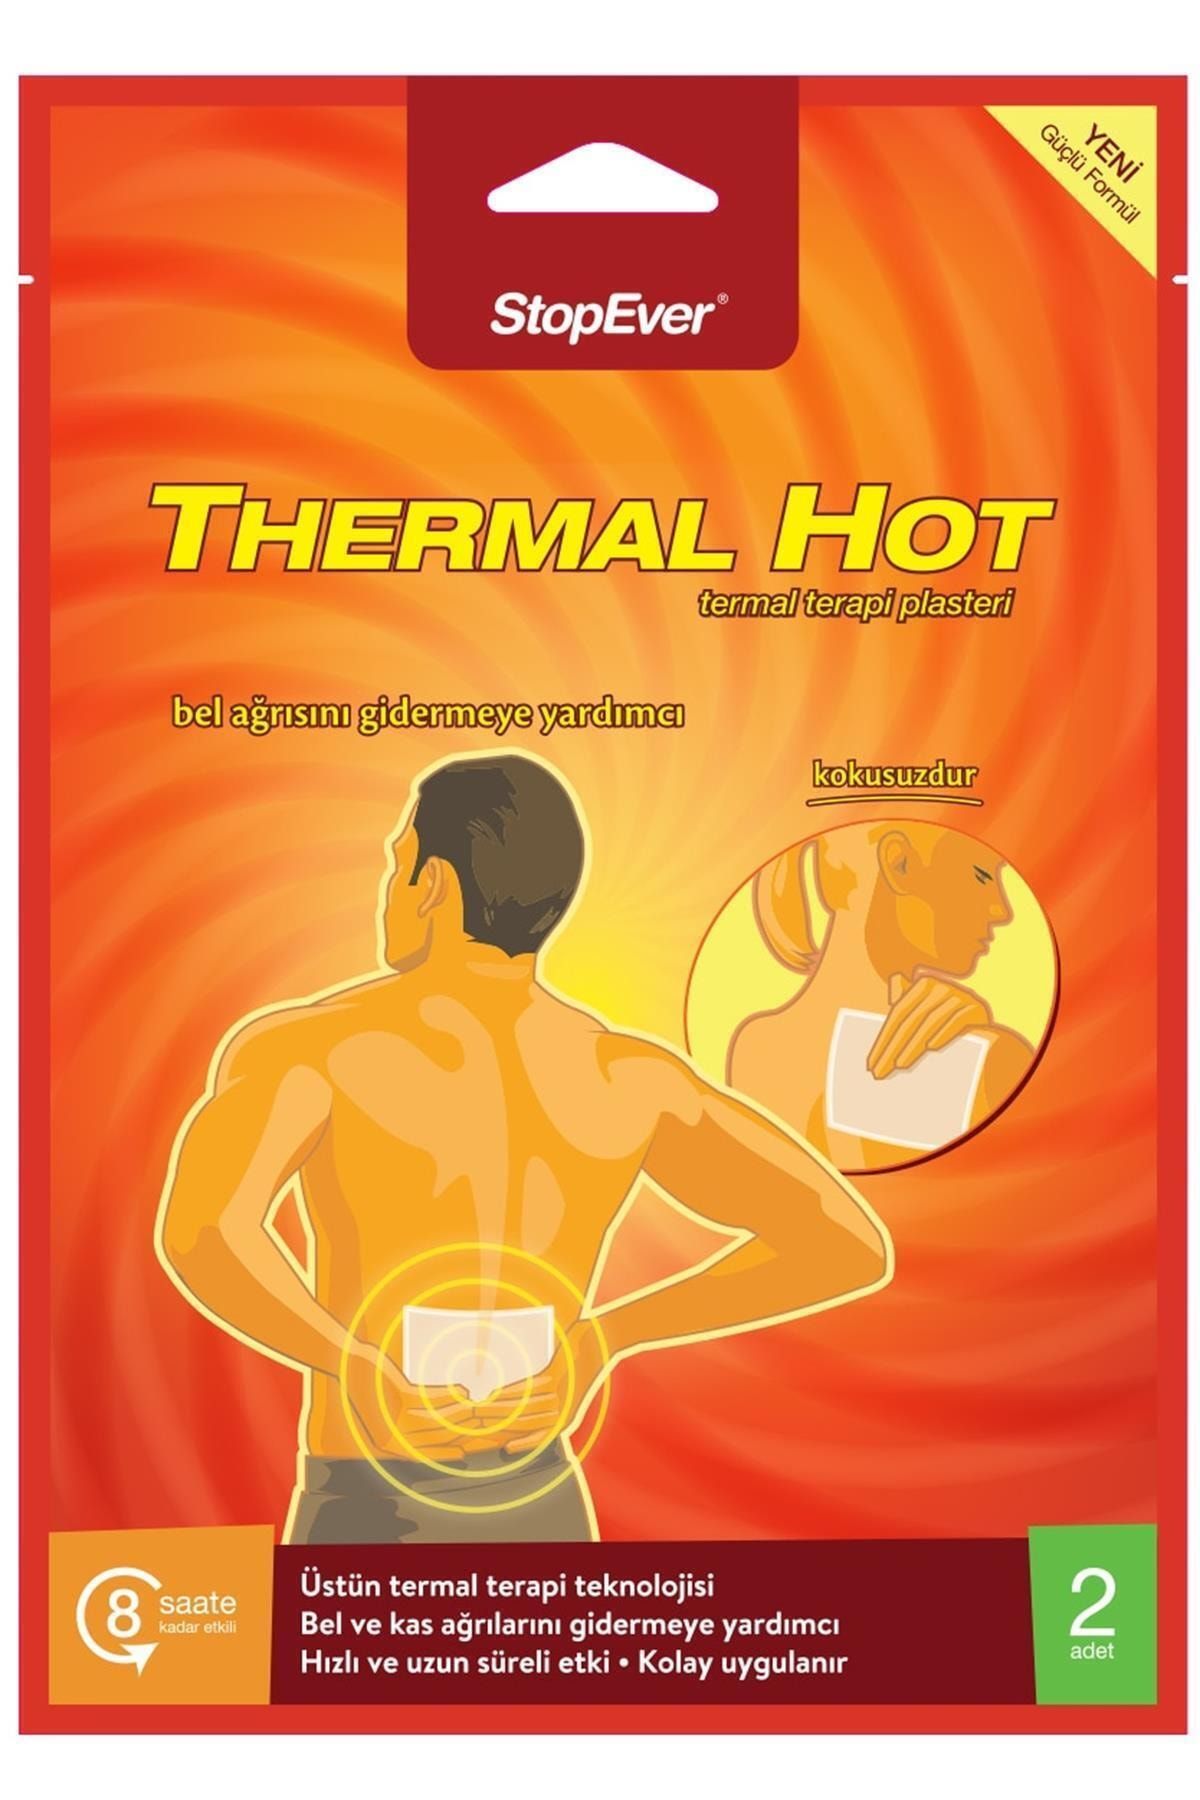 StopEver Marka: Thermal Hot Terapi Plasteri Kategori: Diğer Sağlık Ürünleri